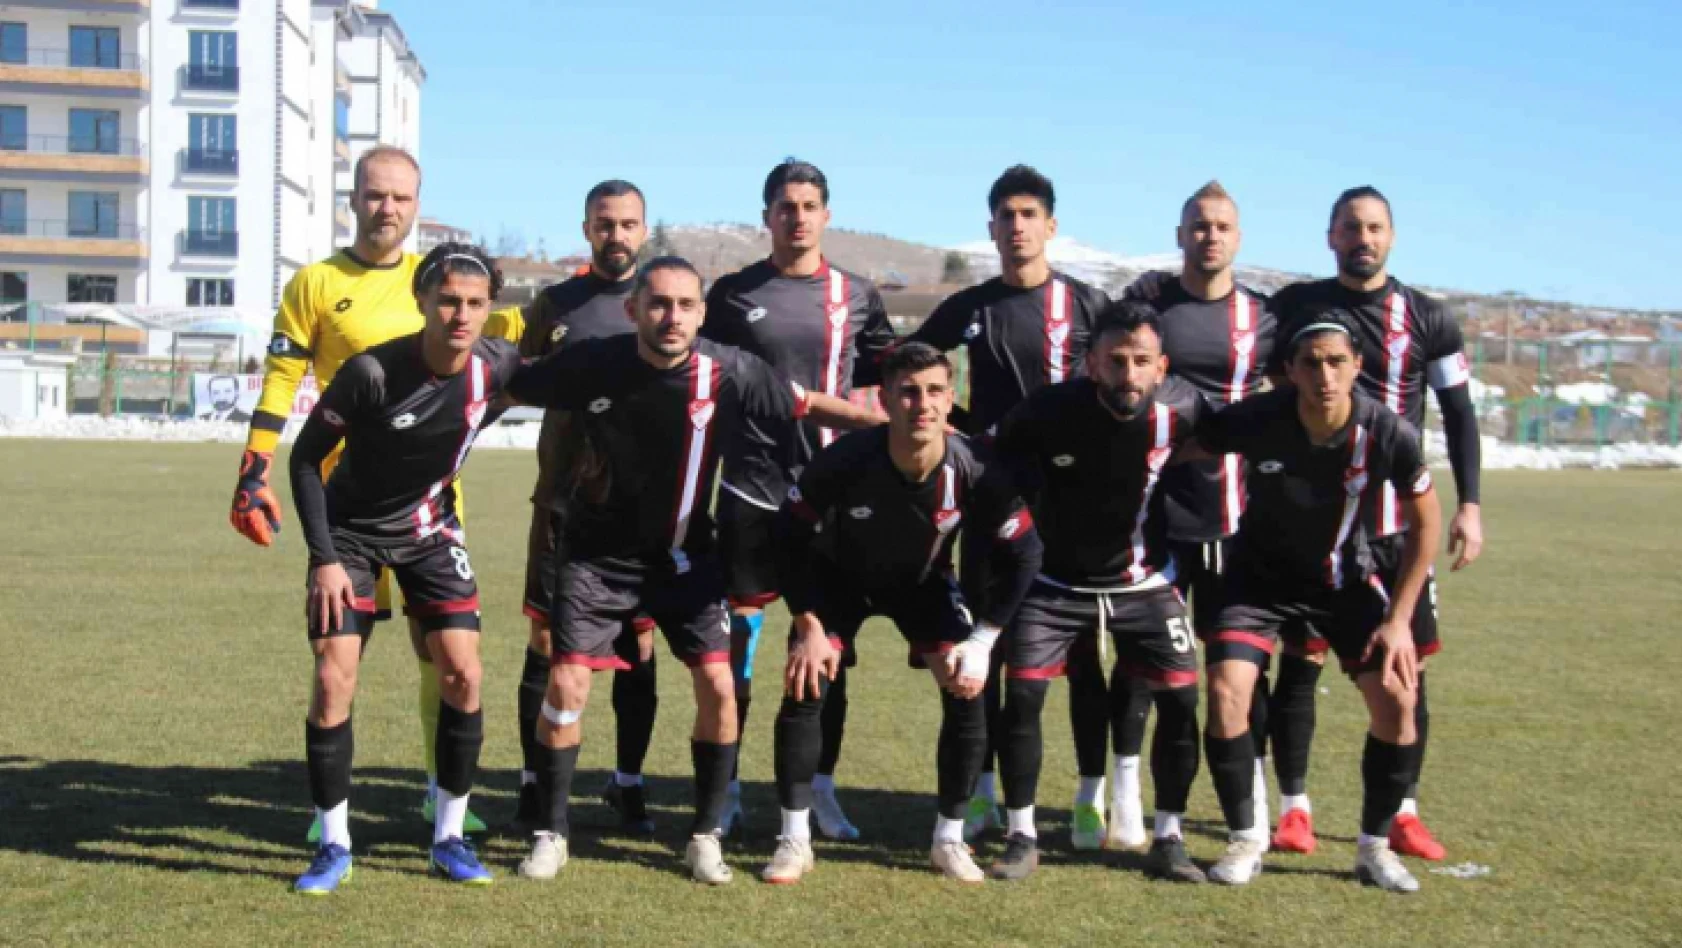 Elazığspor, Karaman'a 20 futbolcuyla gitti